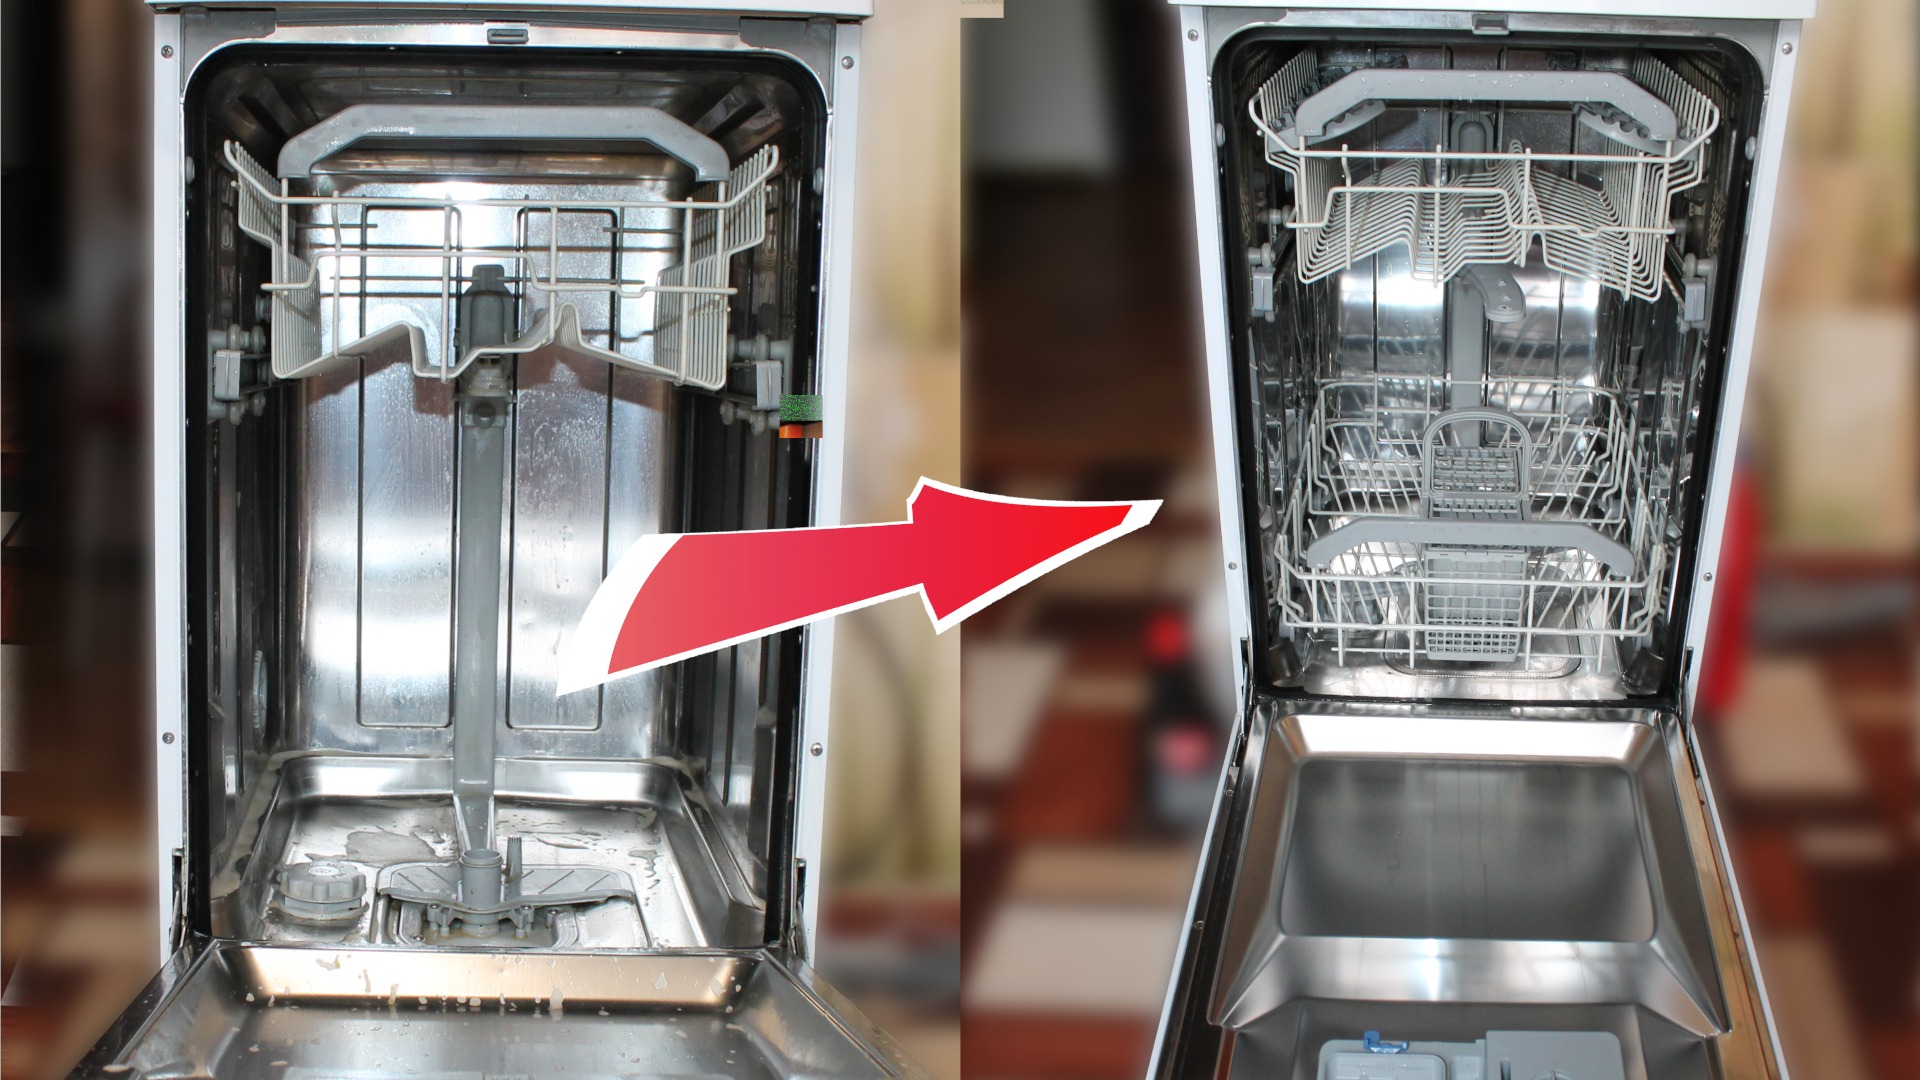 Очистка фильтра посудомоечной машины: мусорного и наливного